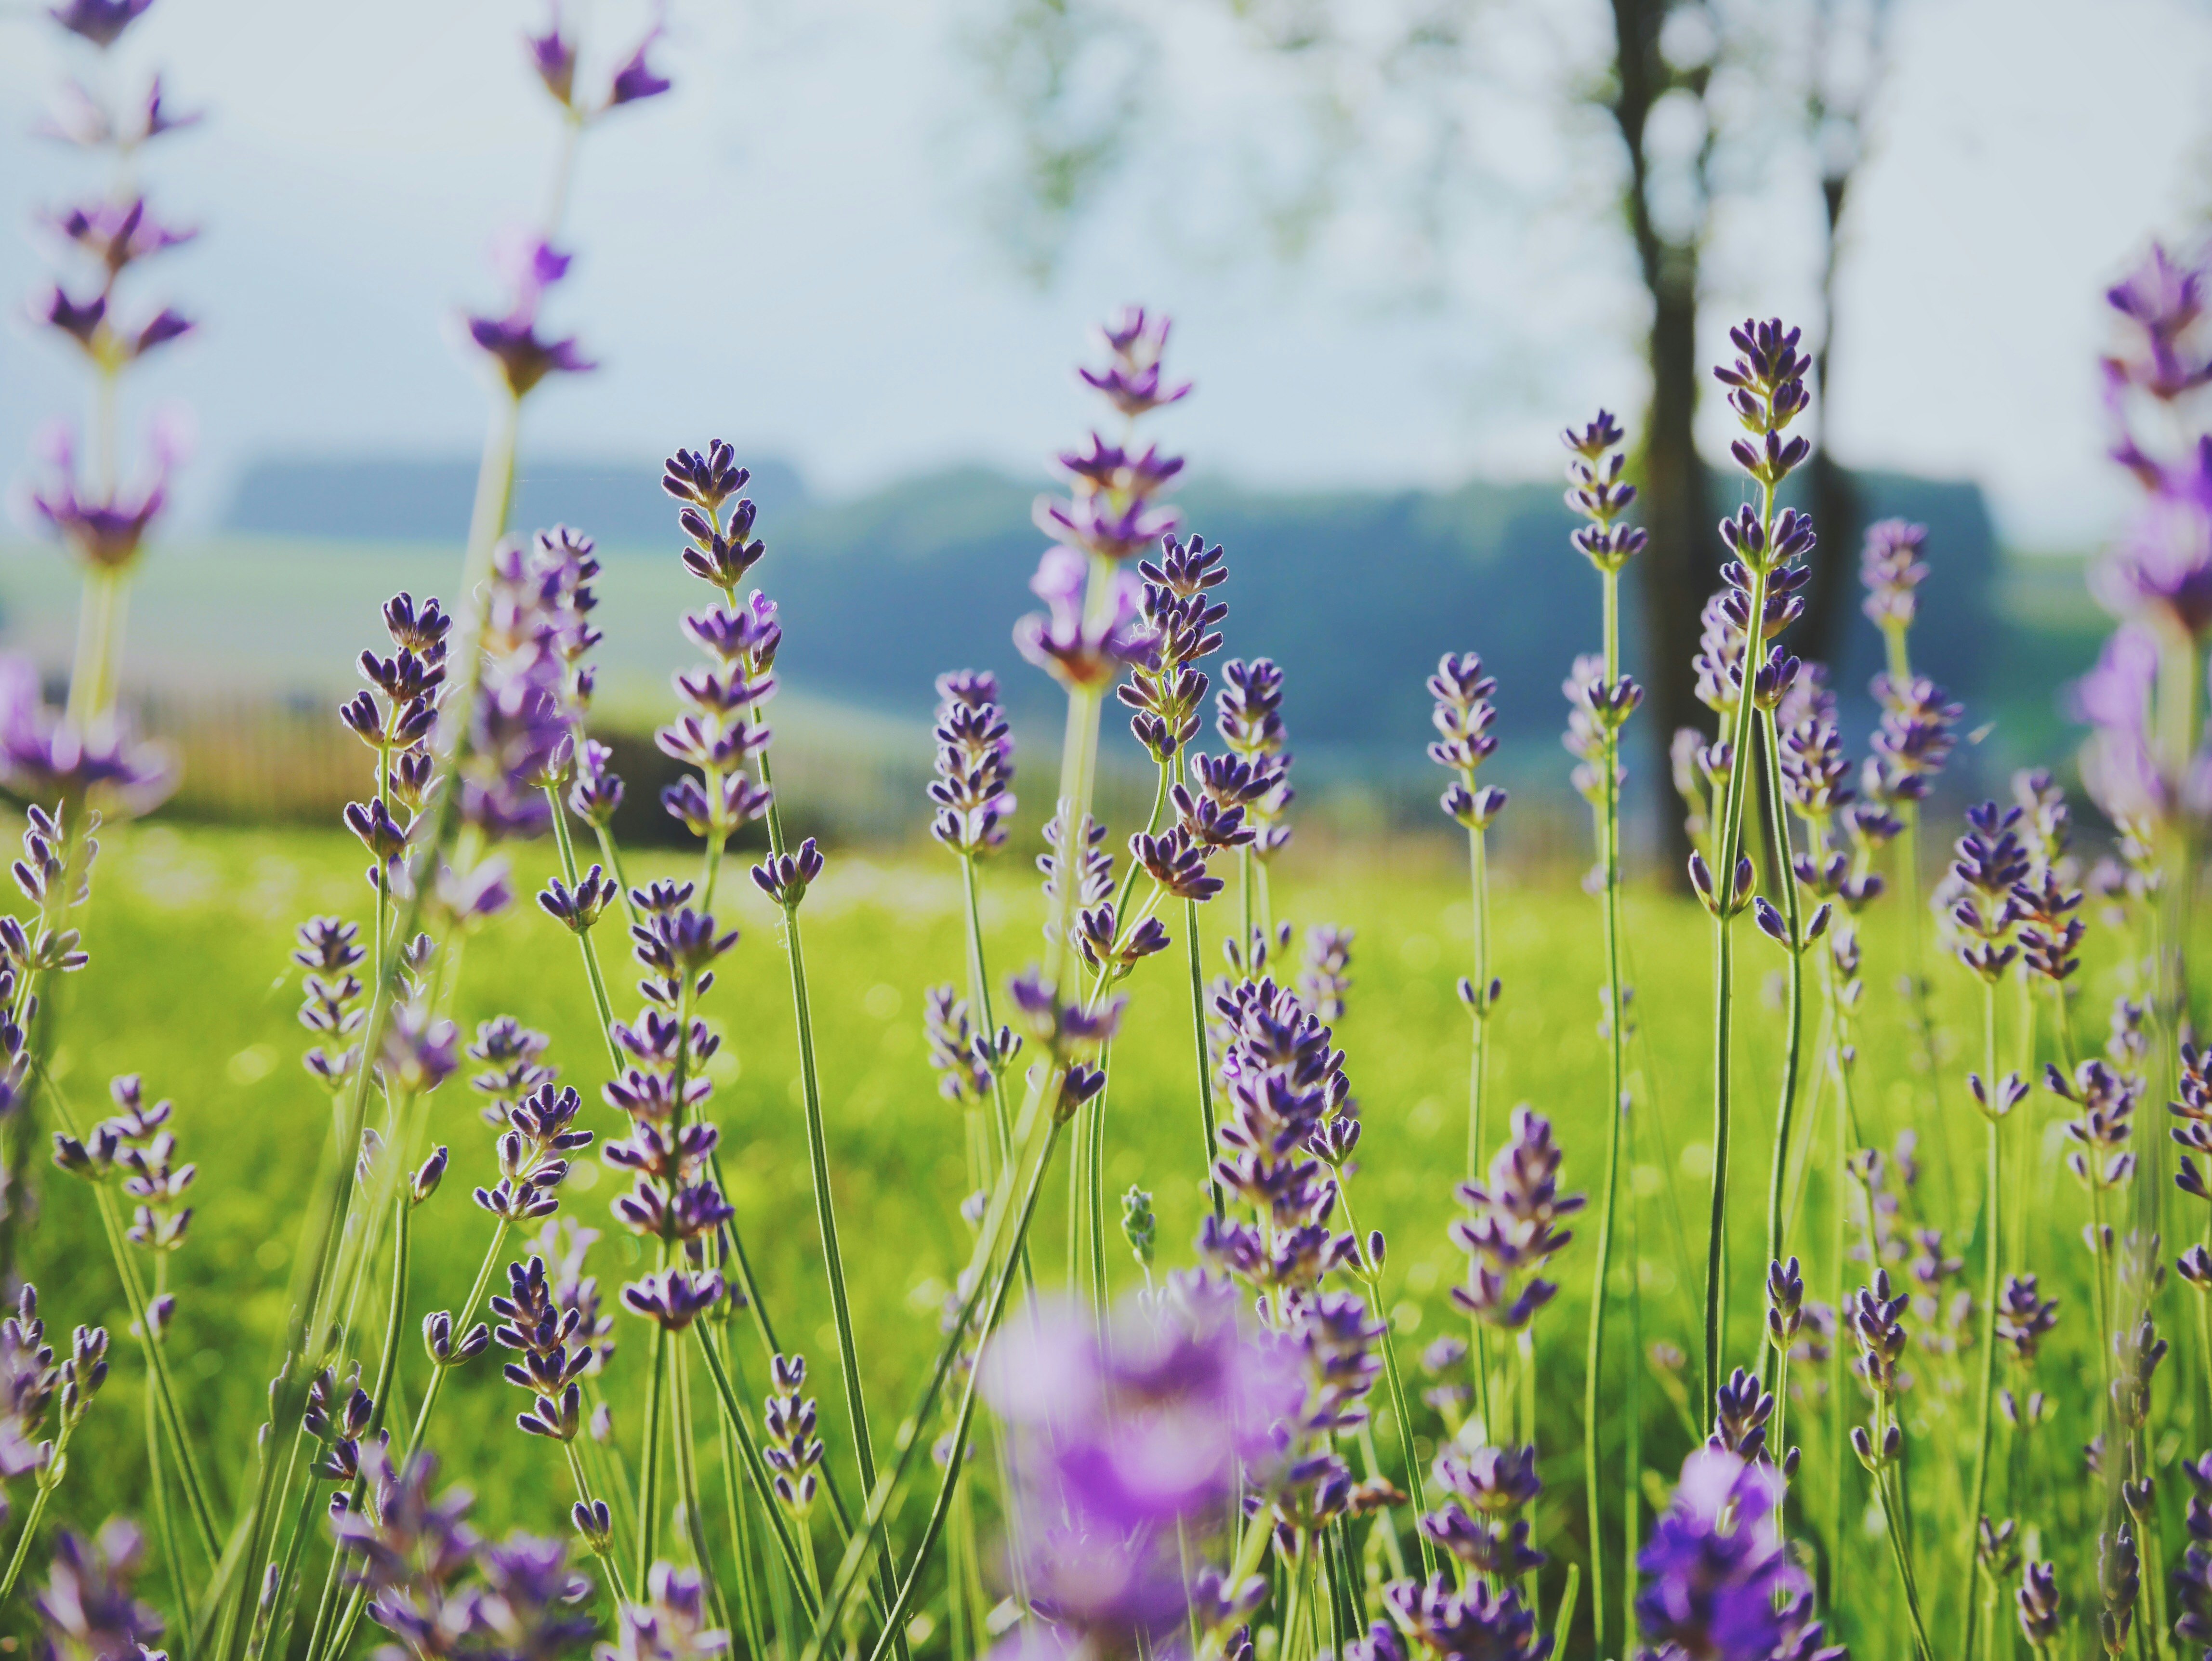 Sweet lavender in a green field